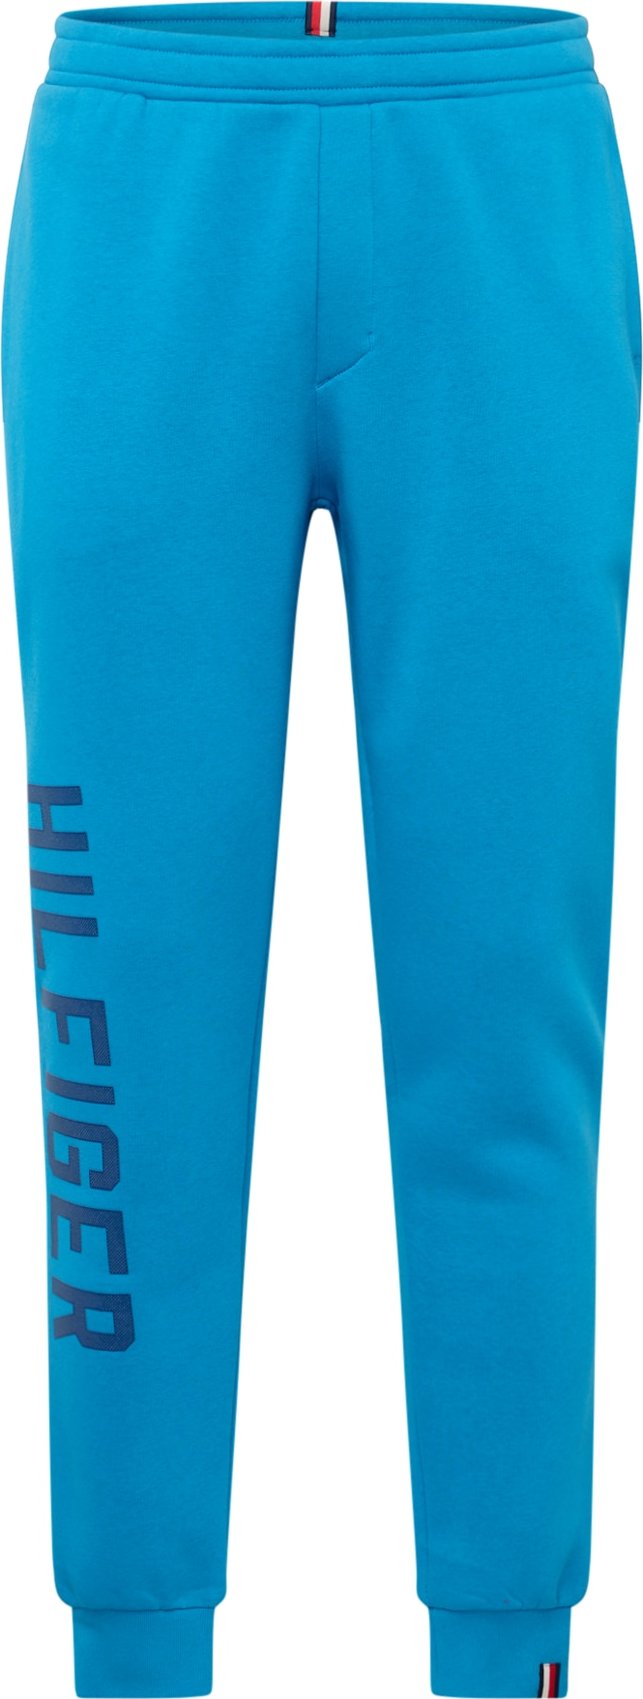 Kalhoty 'GRAPHIC' Tommy Hilfiger marine modrá / azurová modrá